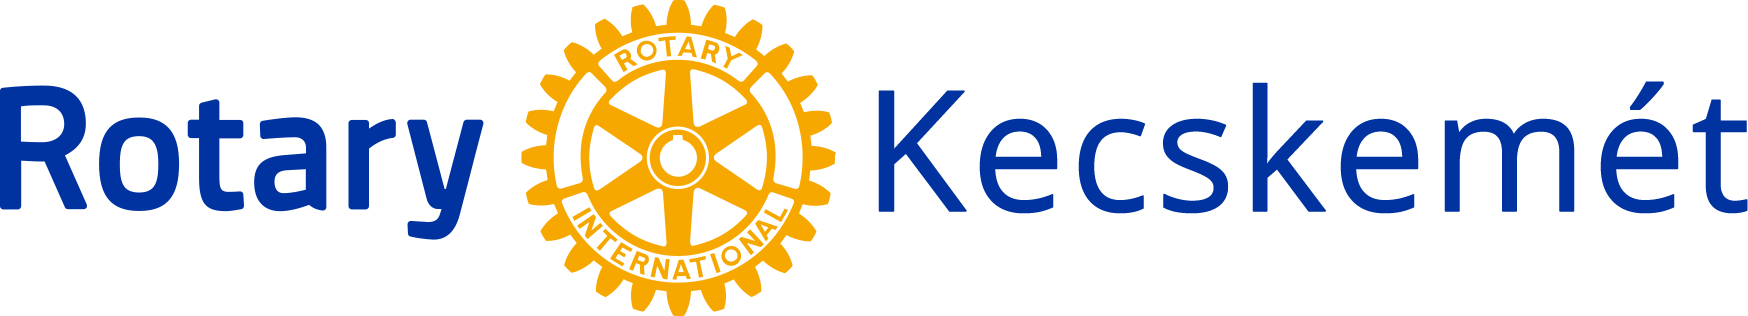 Rotary Club Kecskemét Egyesület logo